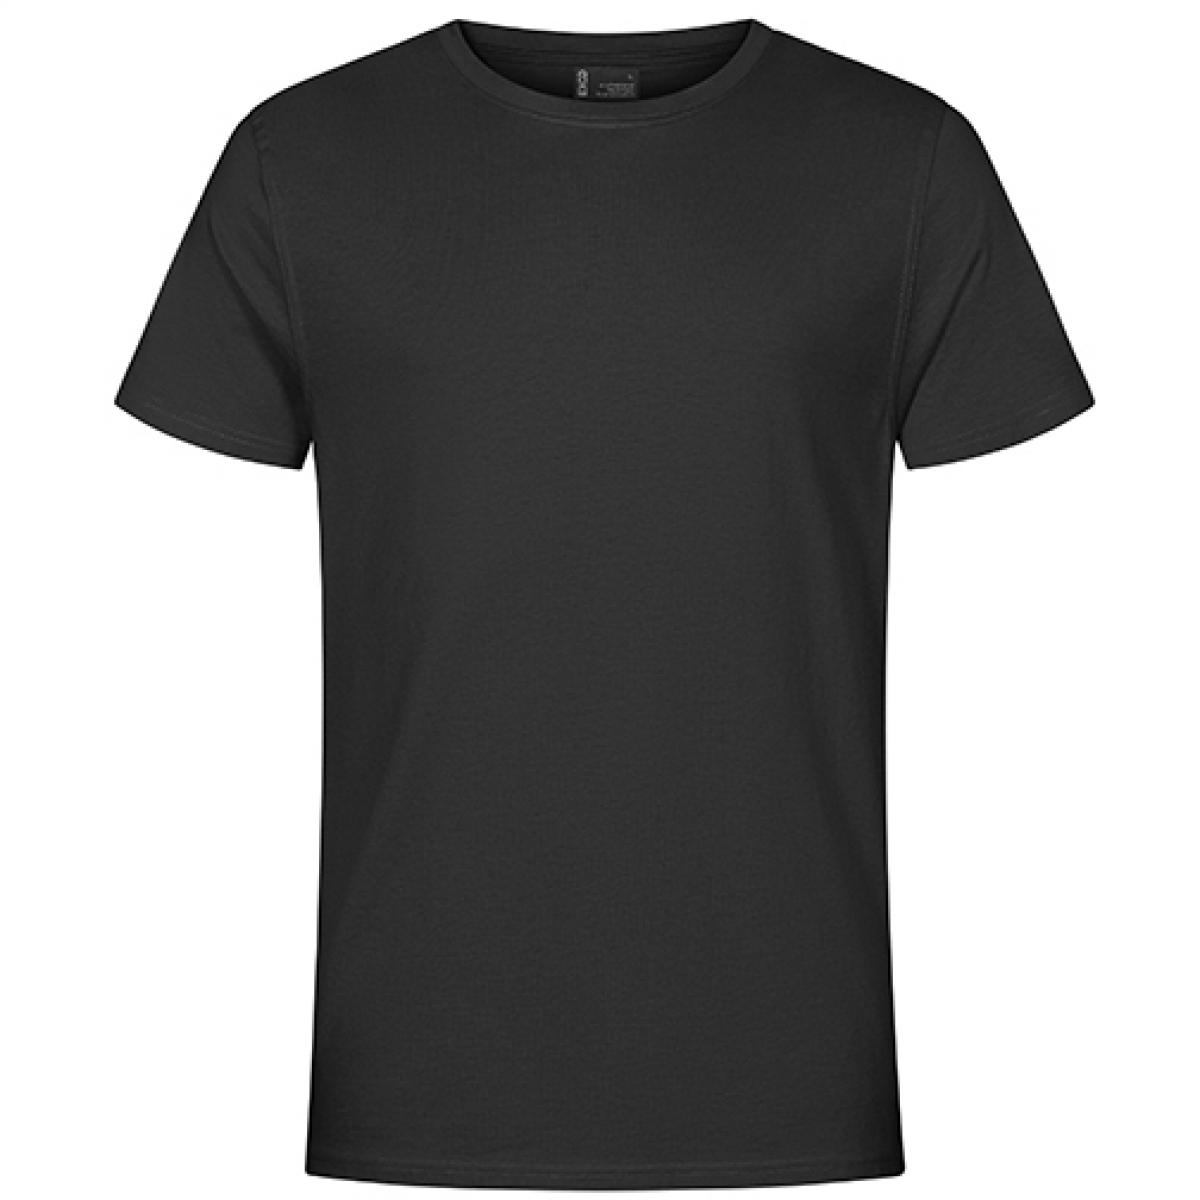 Hersteller: EXCD by Promodoro Herstellernummer: 3077 Artikelbezeichnung: Herren T-Shirt, Single-Jersey Farbe: Charcoal (Solid)